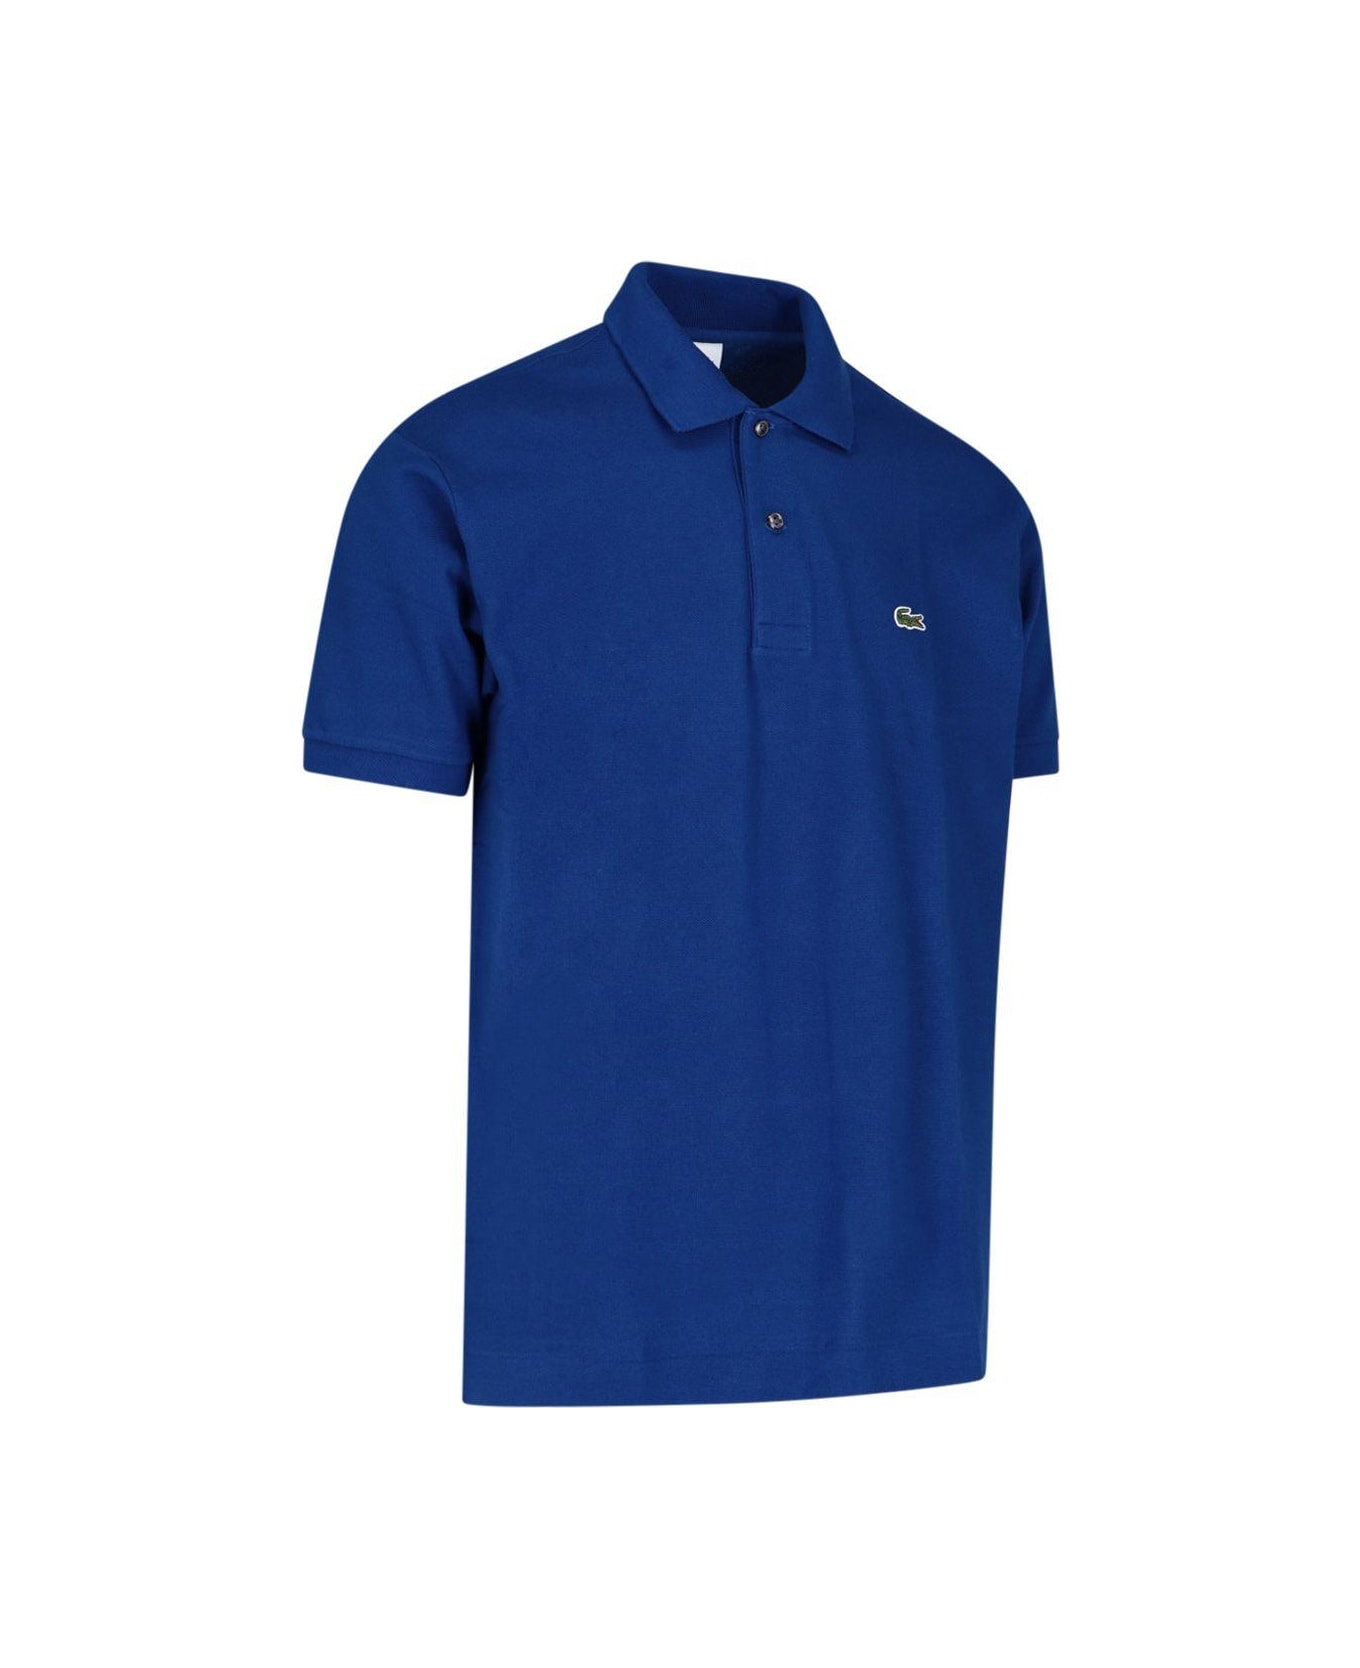 Lacoste Classic Design Polo Shirt - Inchiostro